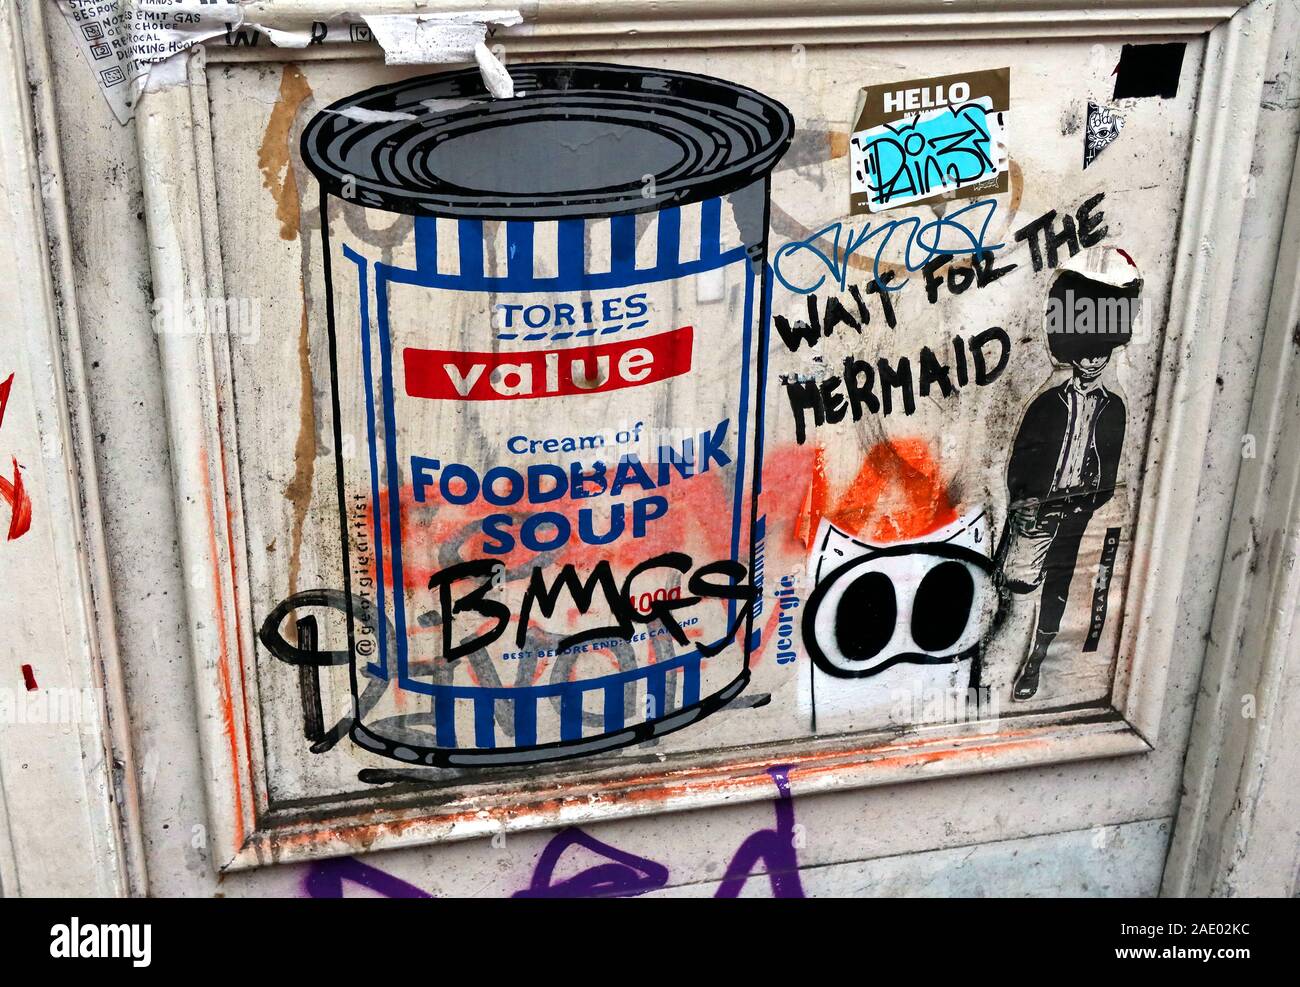 Tory Werte, Tories Creme der Foodbank Suppe, Graffiti Papier poster Schablone, London - Parodie auf eine Dose Suppe von @GeorgieArtist Foodback Stockfoto